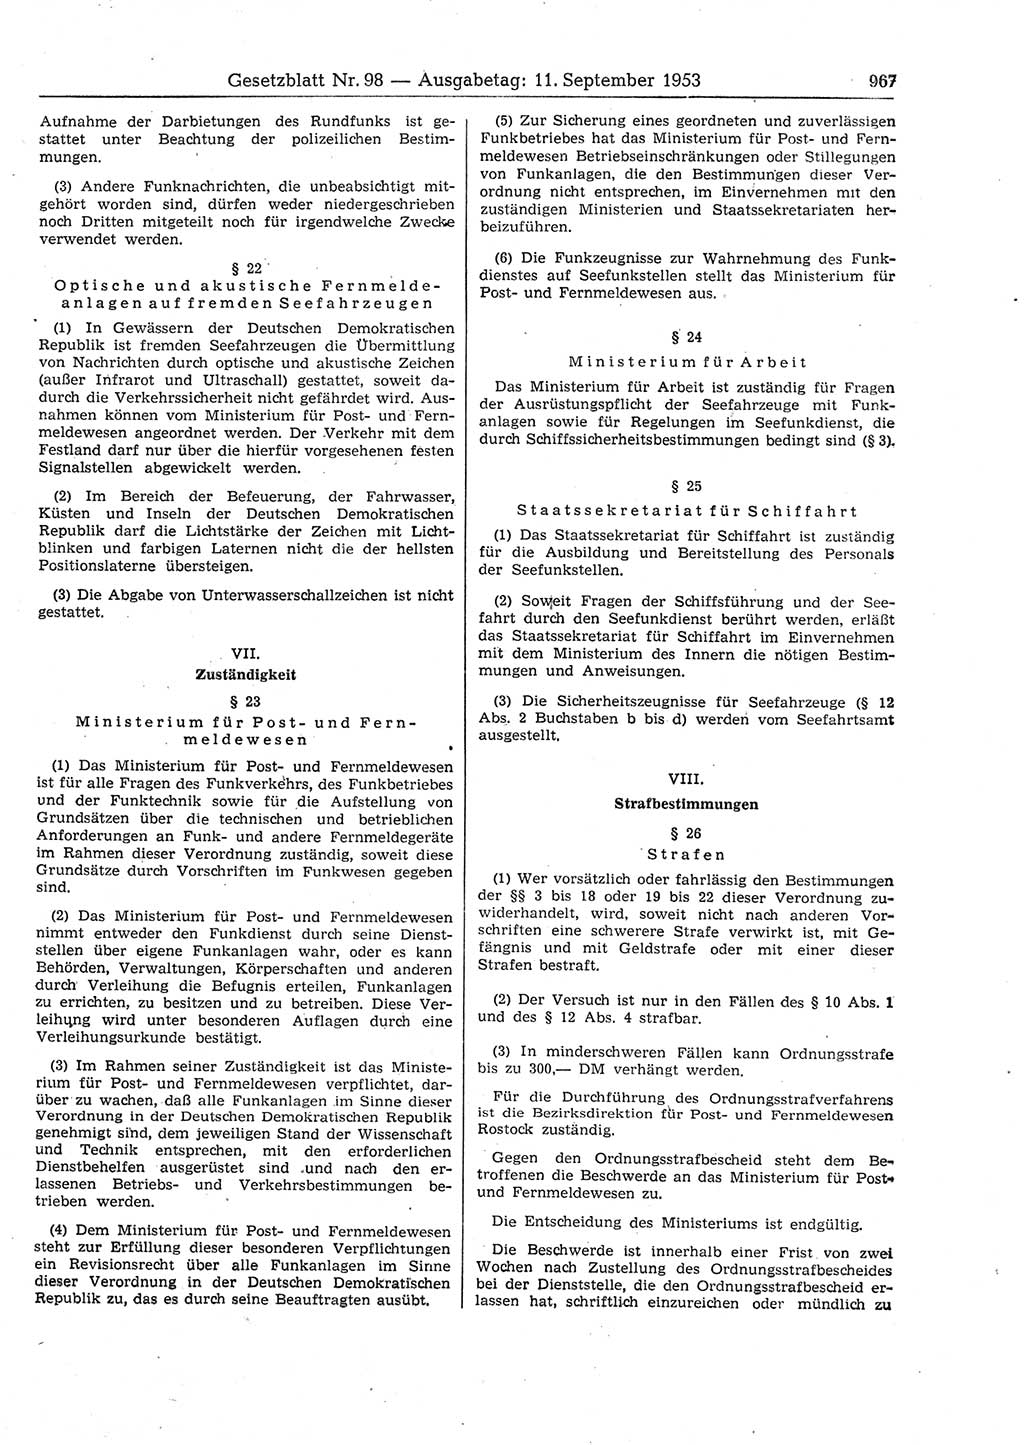 Gesetzblatt (GBl.) der Deutschen Demokratischen Republik (DDR) 1953, Seite 967 (GBl. DDR 1953, S. 967)